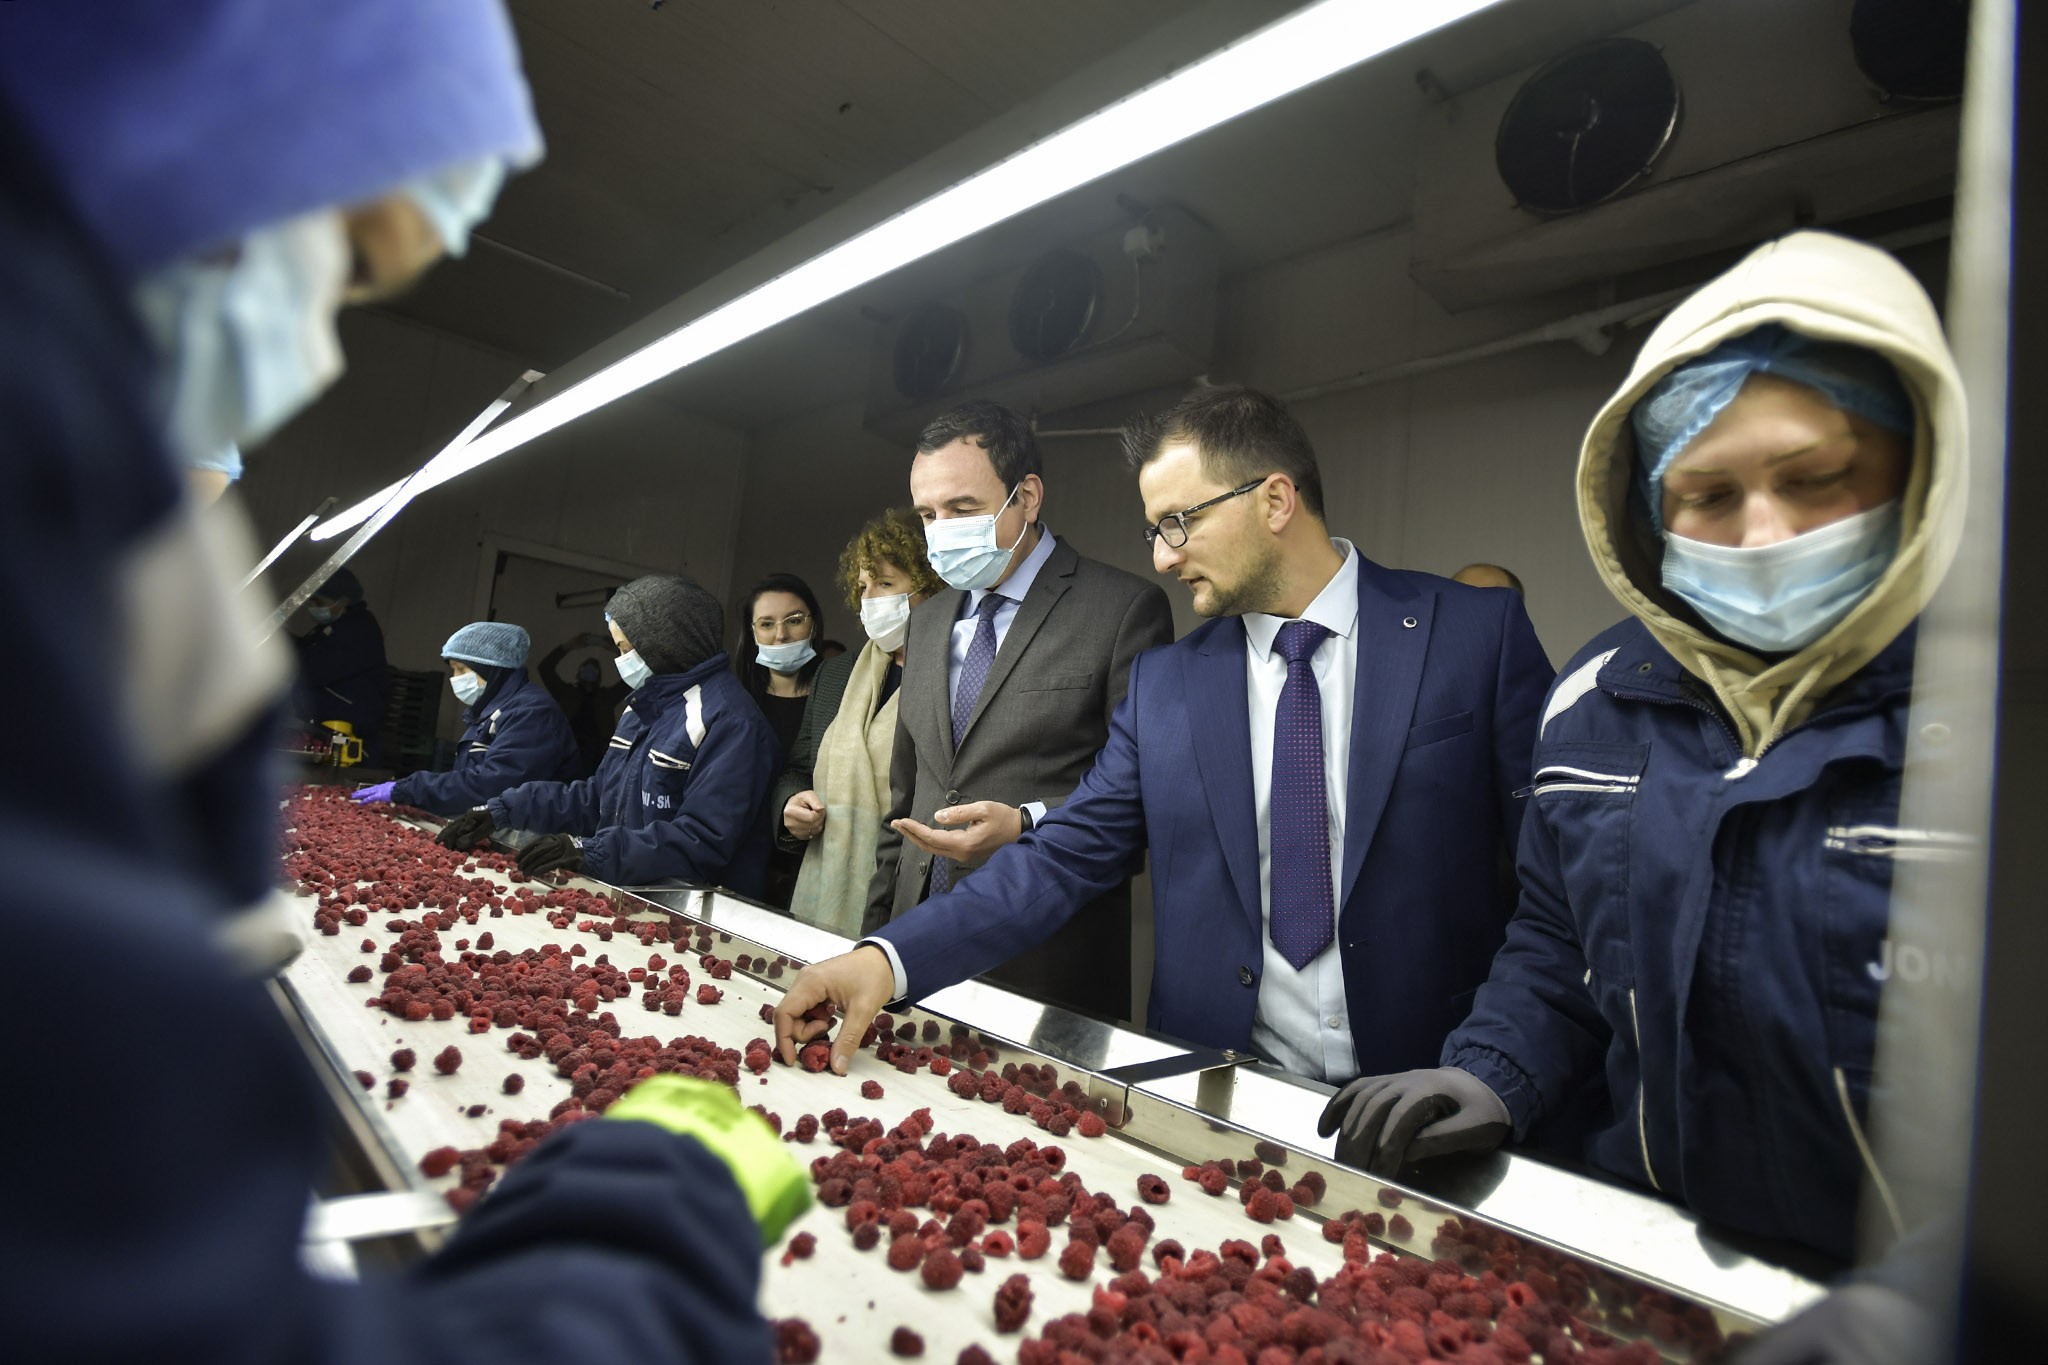 Kryeministri Kurti vizitoi ndërmarrjen që bën përpunimin e frutave të malit